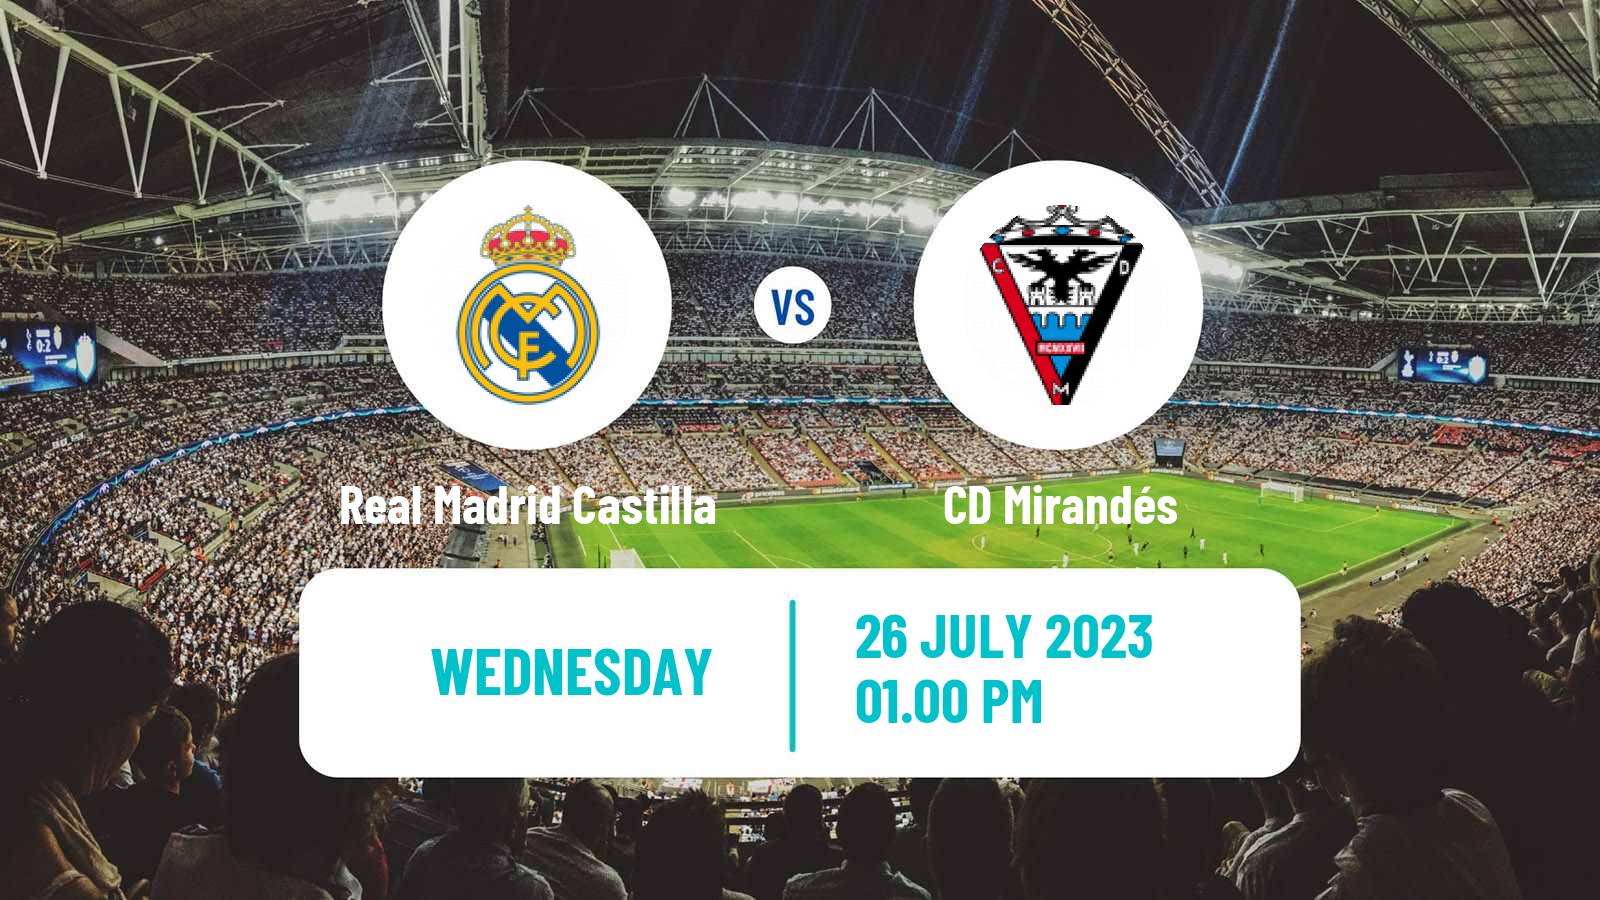 Soccer Club Friendly Real Madrid Castilla - Mirandés